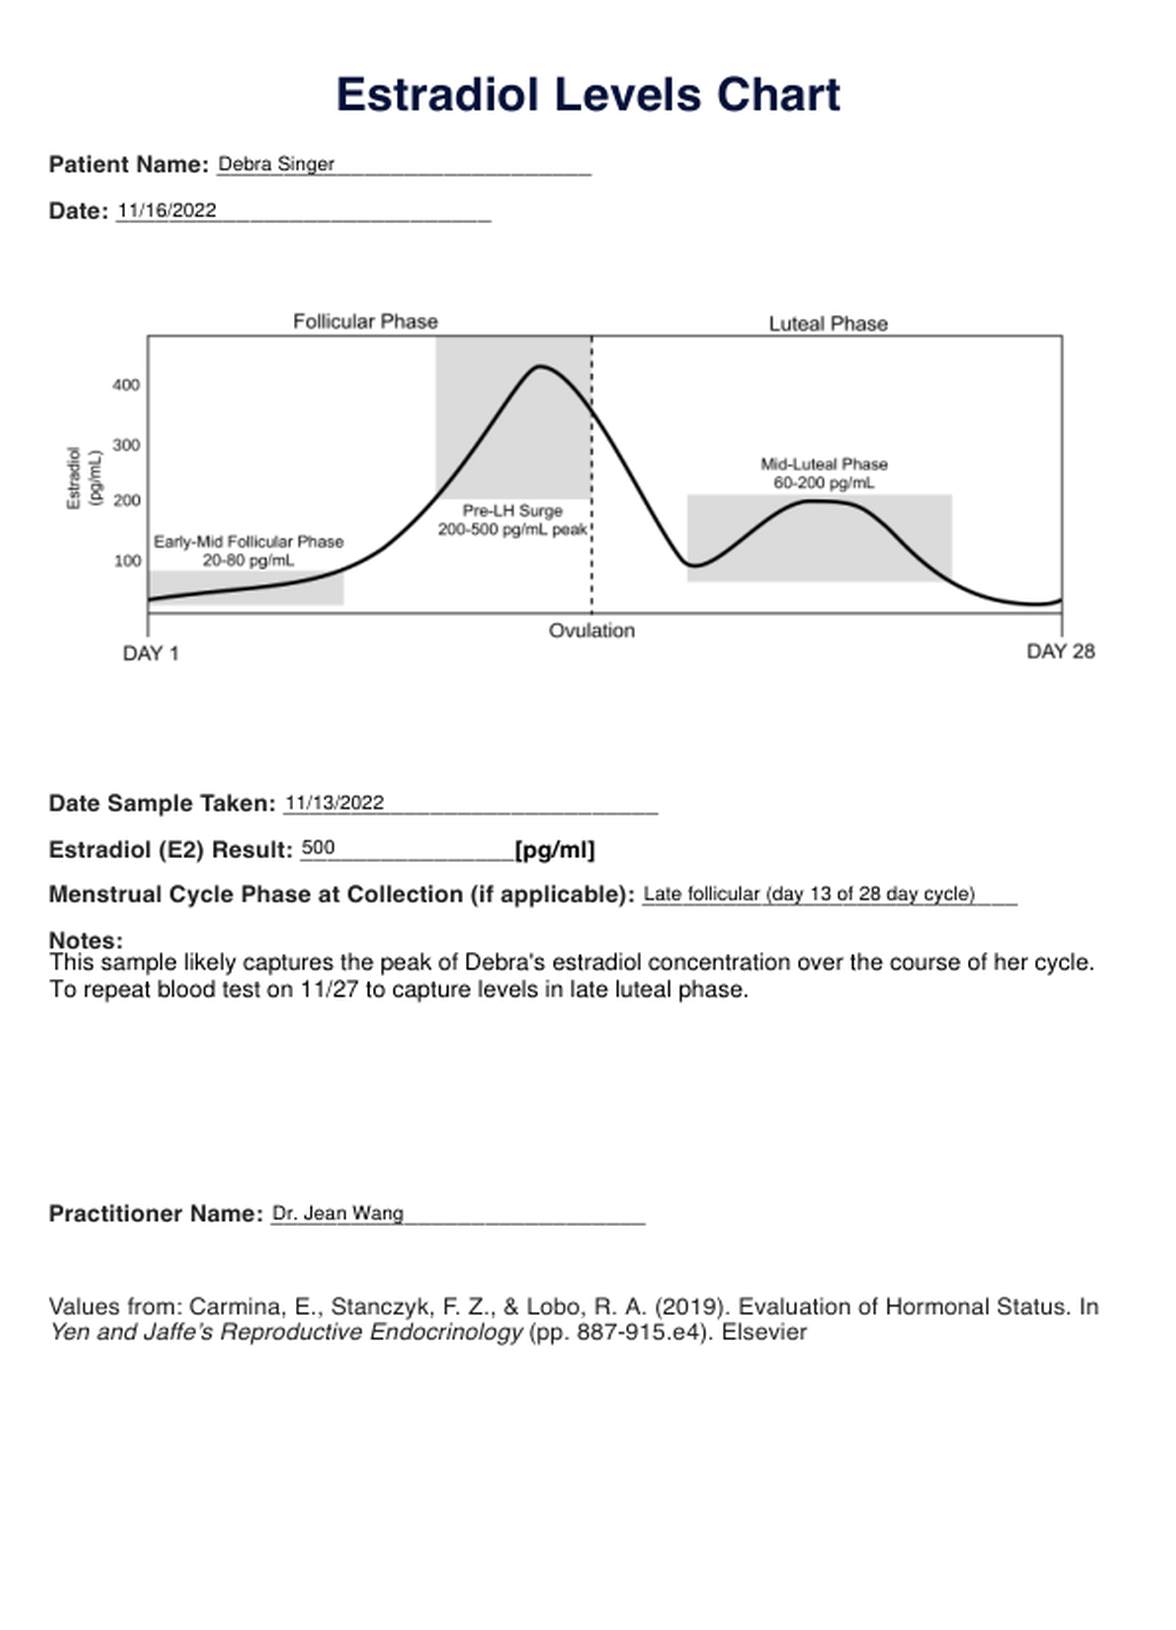 Estradiol Levels PDF Example